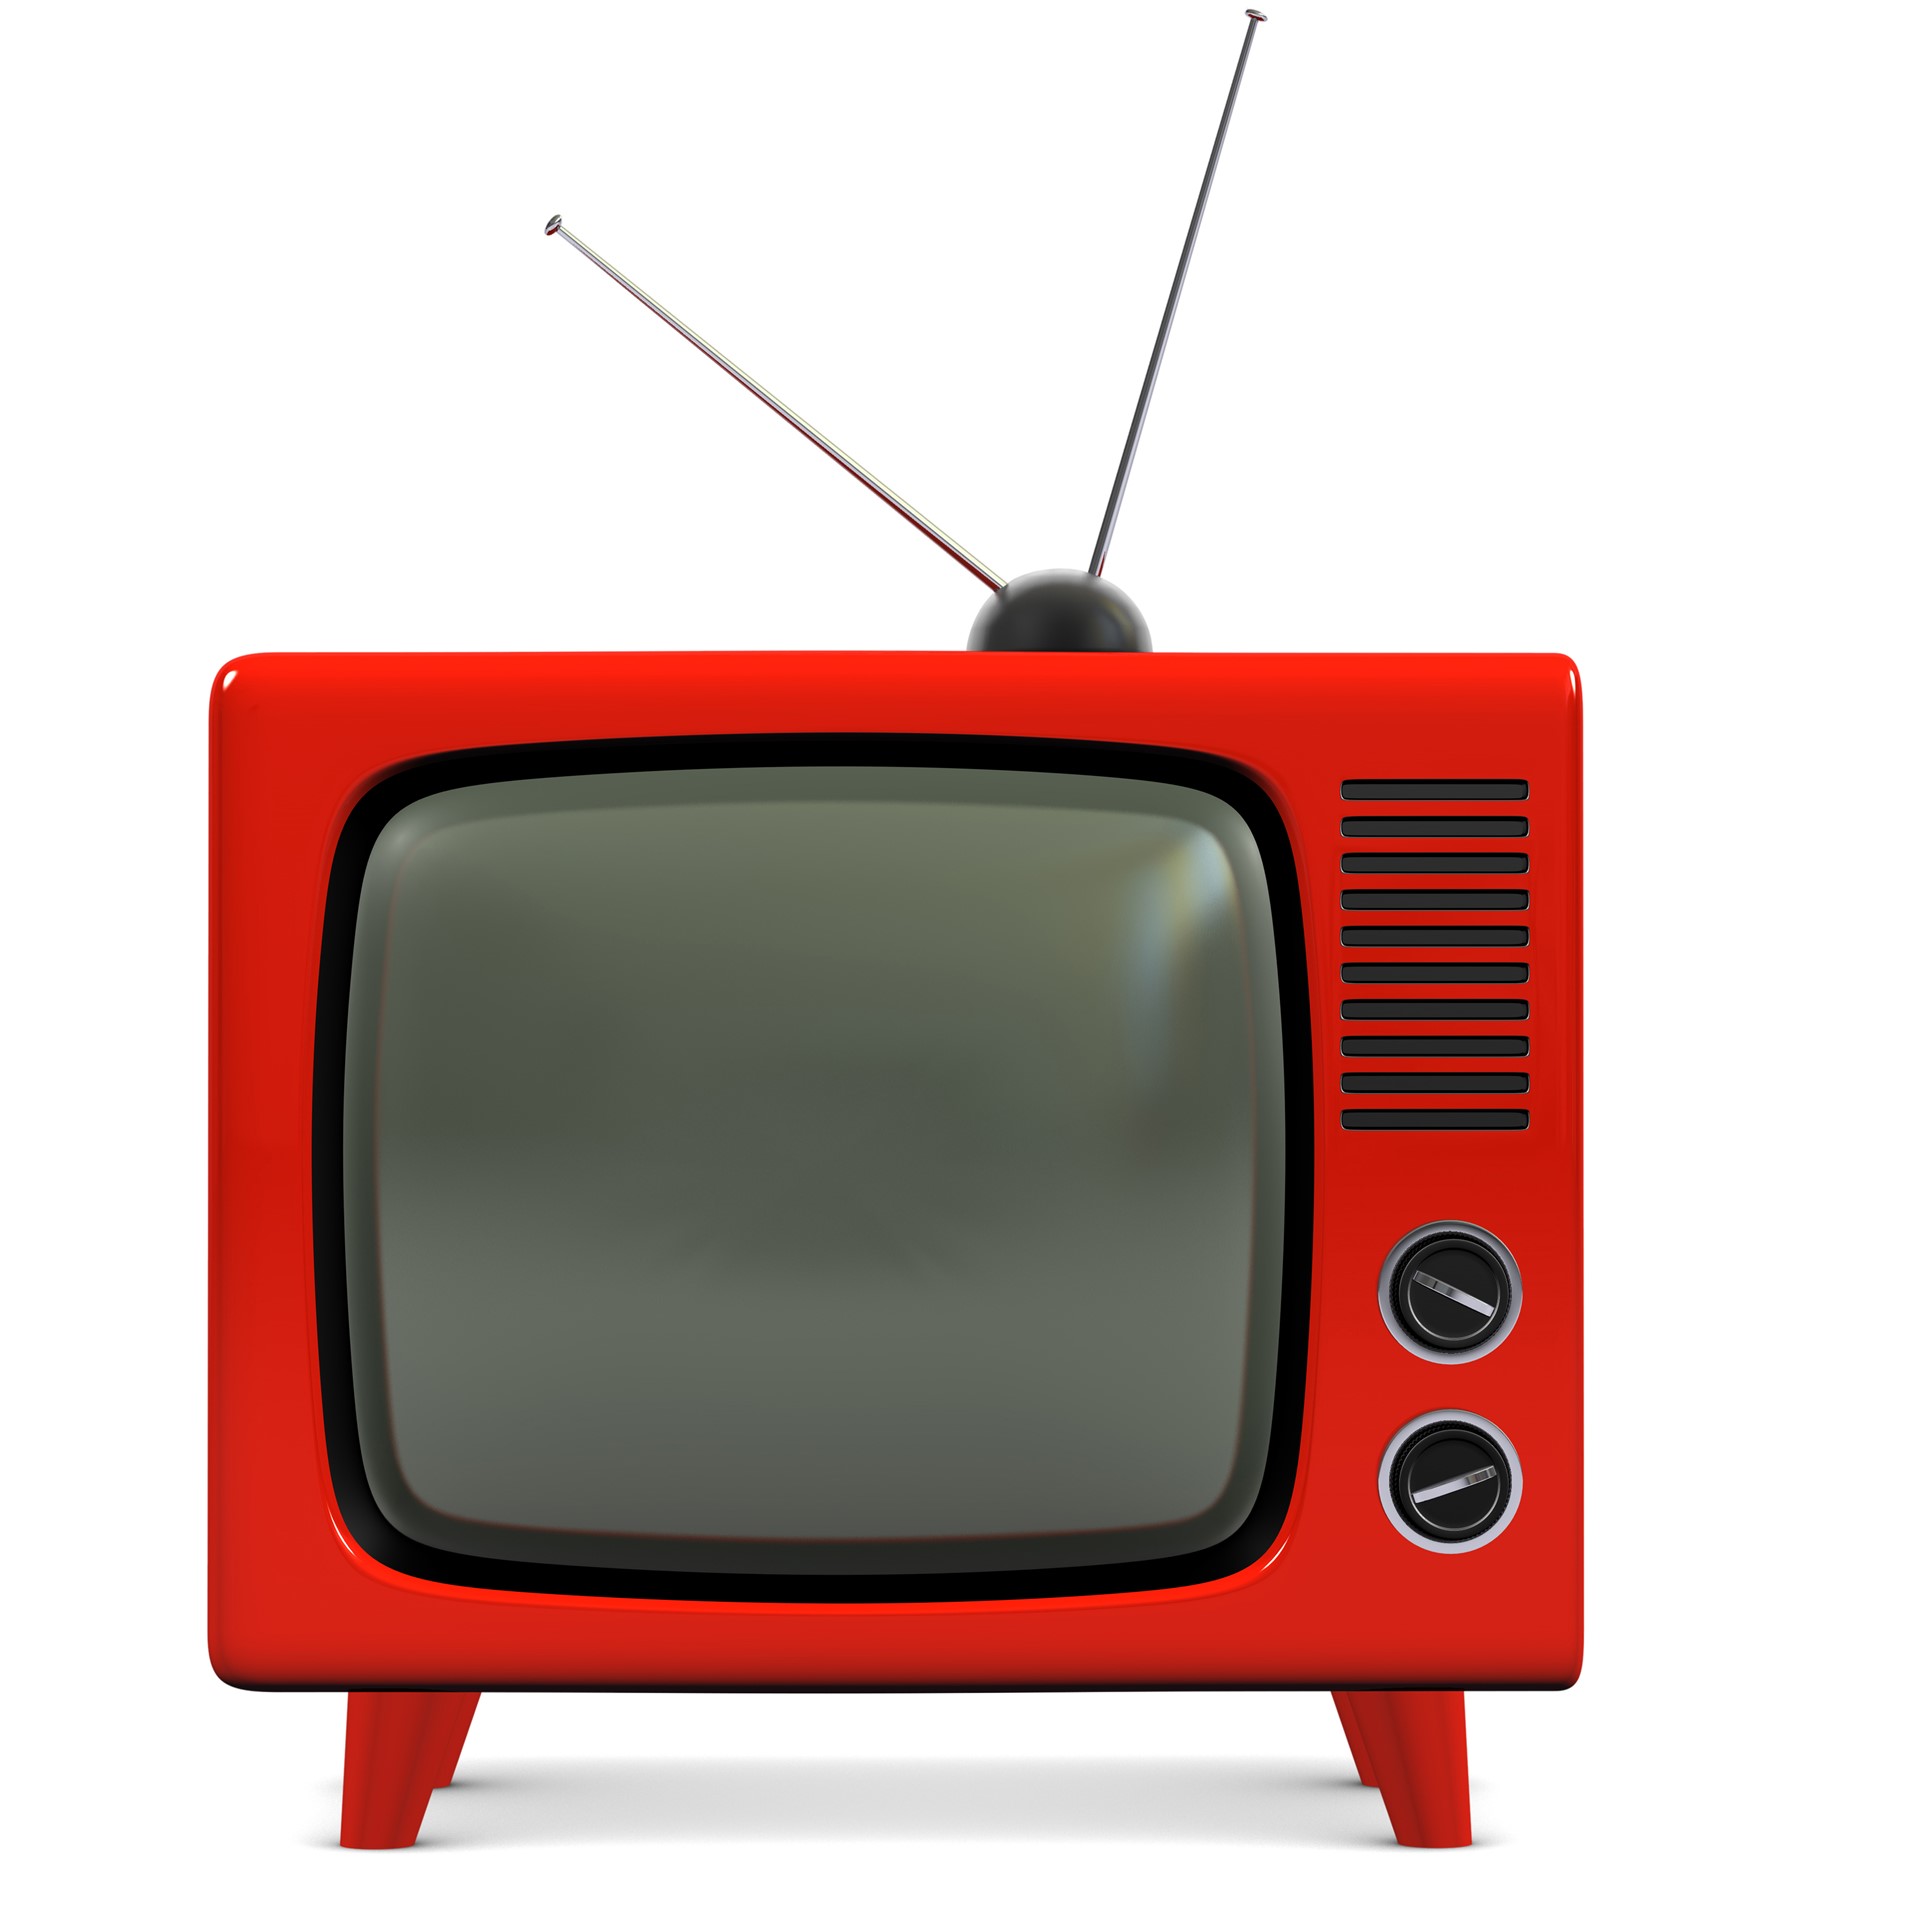 Изображение телевизора красное. Красный телевизор. Телевизор на прозрачном фоне. Телевизор для детей. Телевизор вектор.